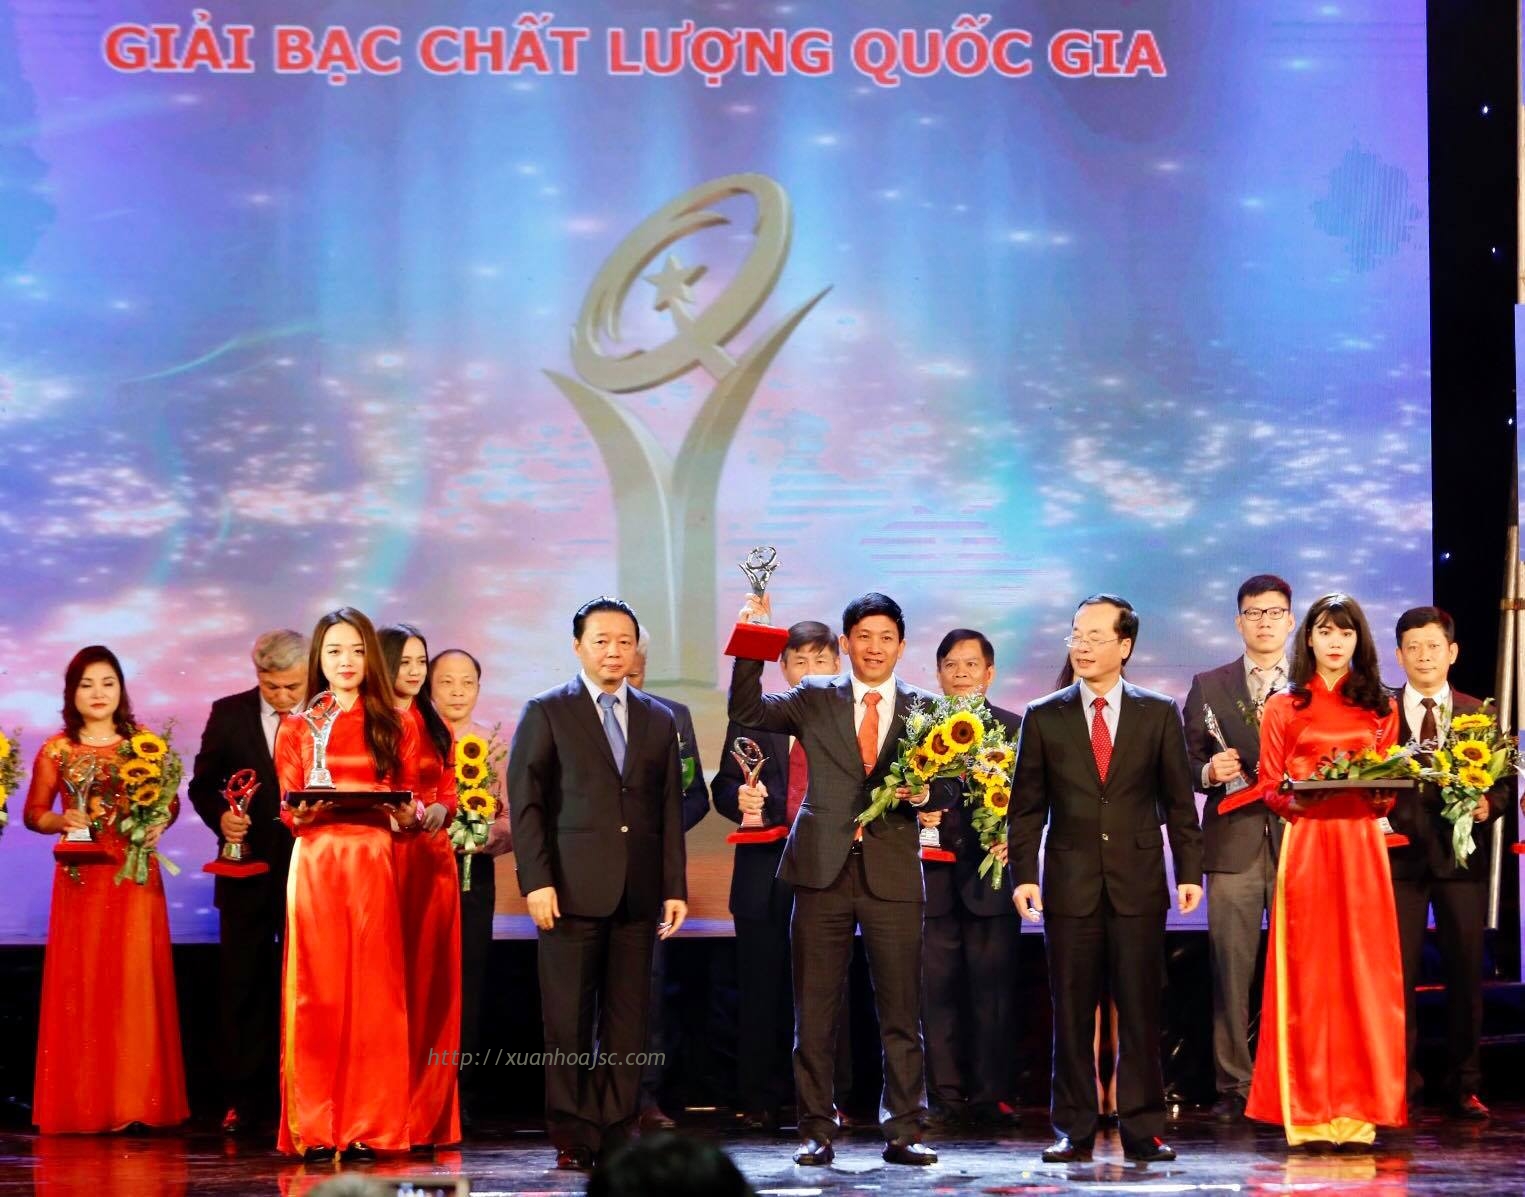 Xuân Hòa được trao tặng Giải thưởng Chất lượng Quốc gia năm 2017/2018